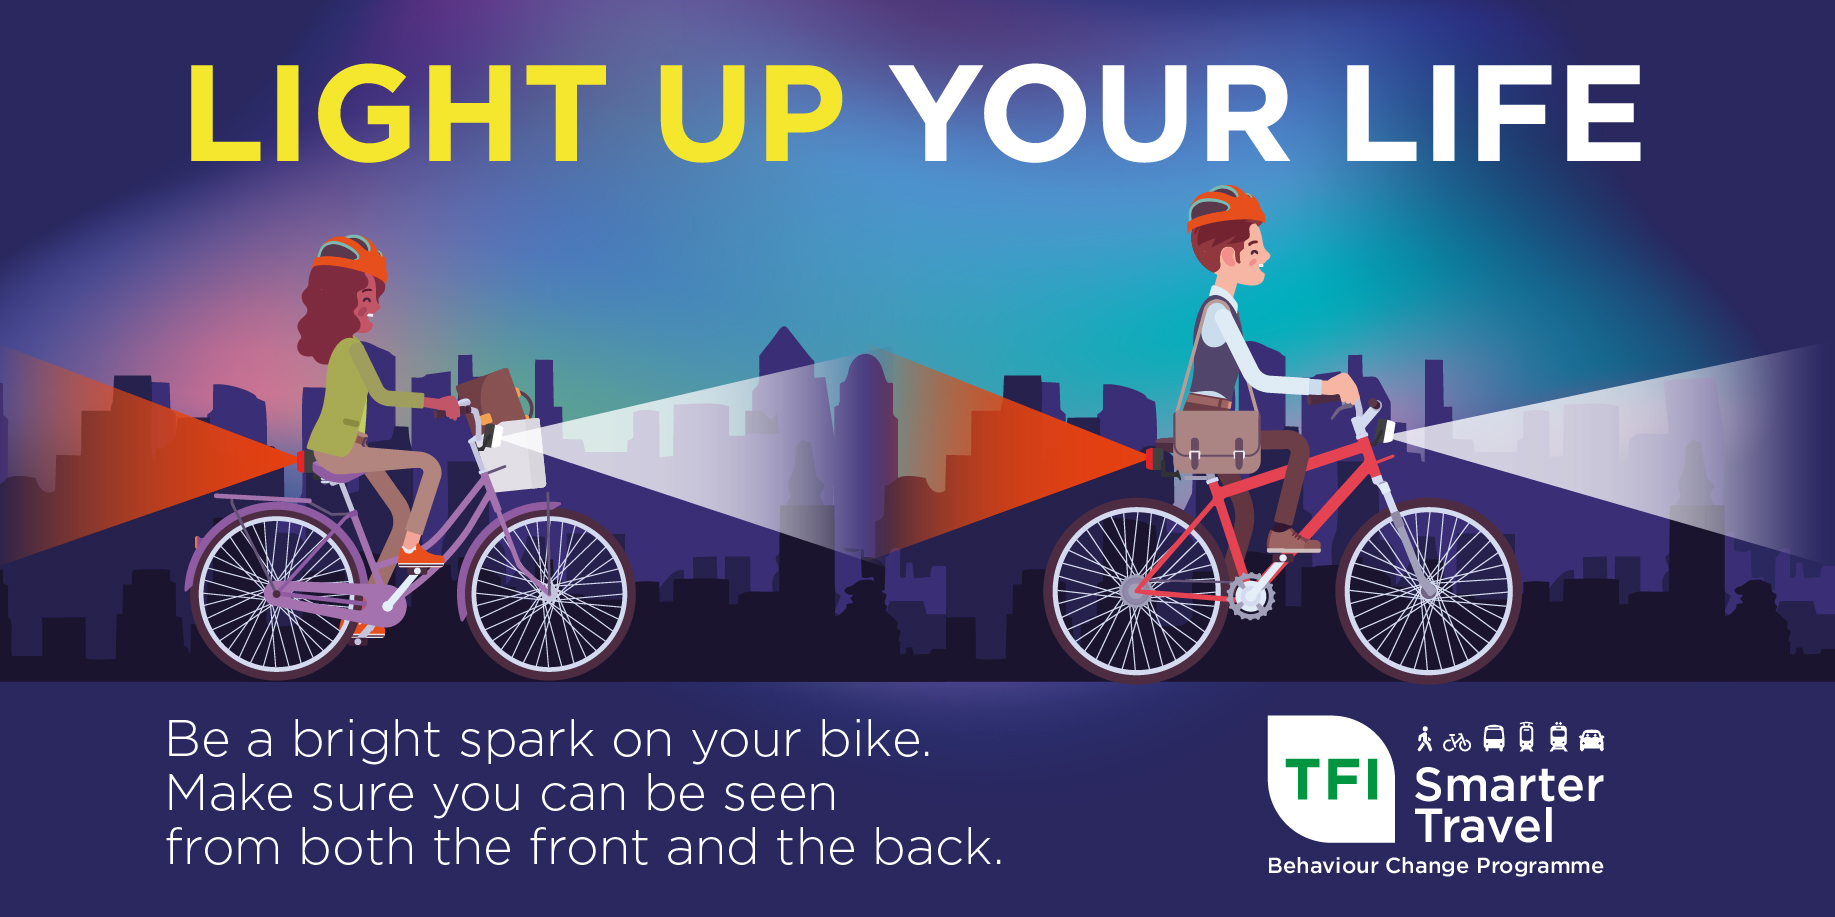 Light Up Your Life' Bike Light Promotion - National Transport